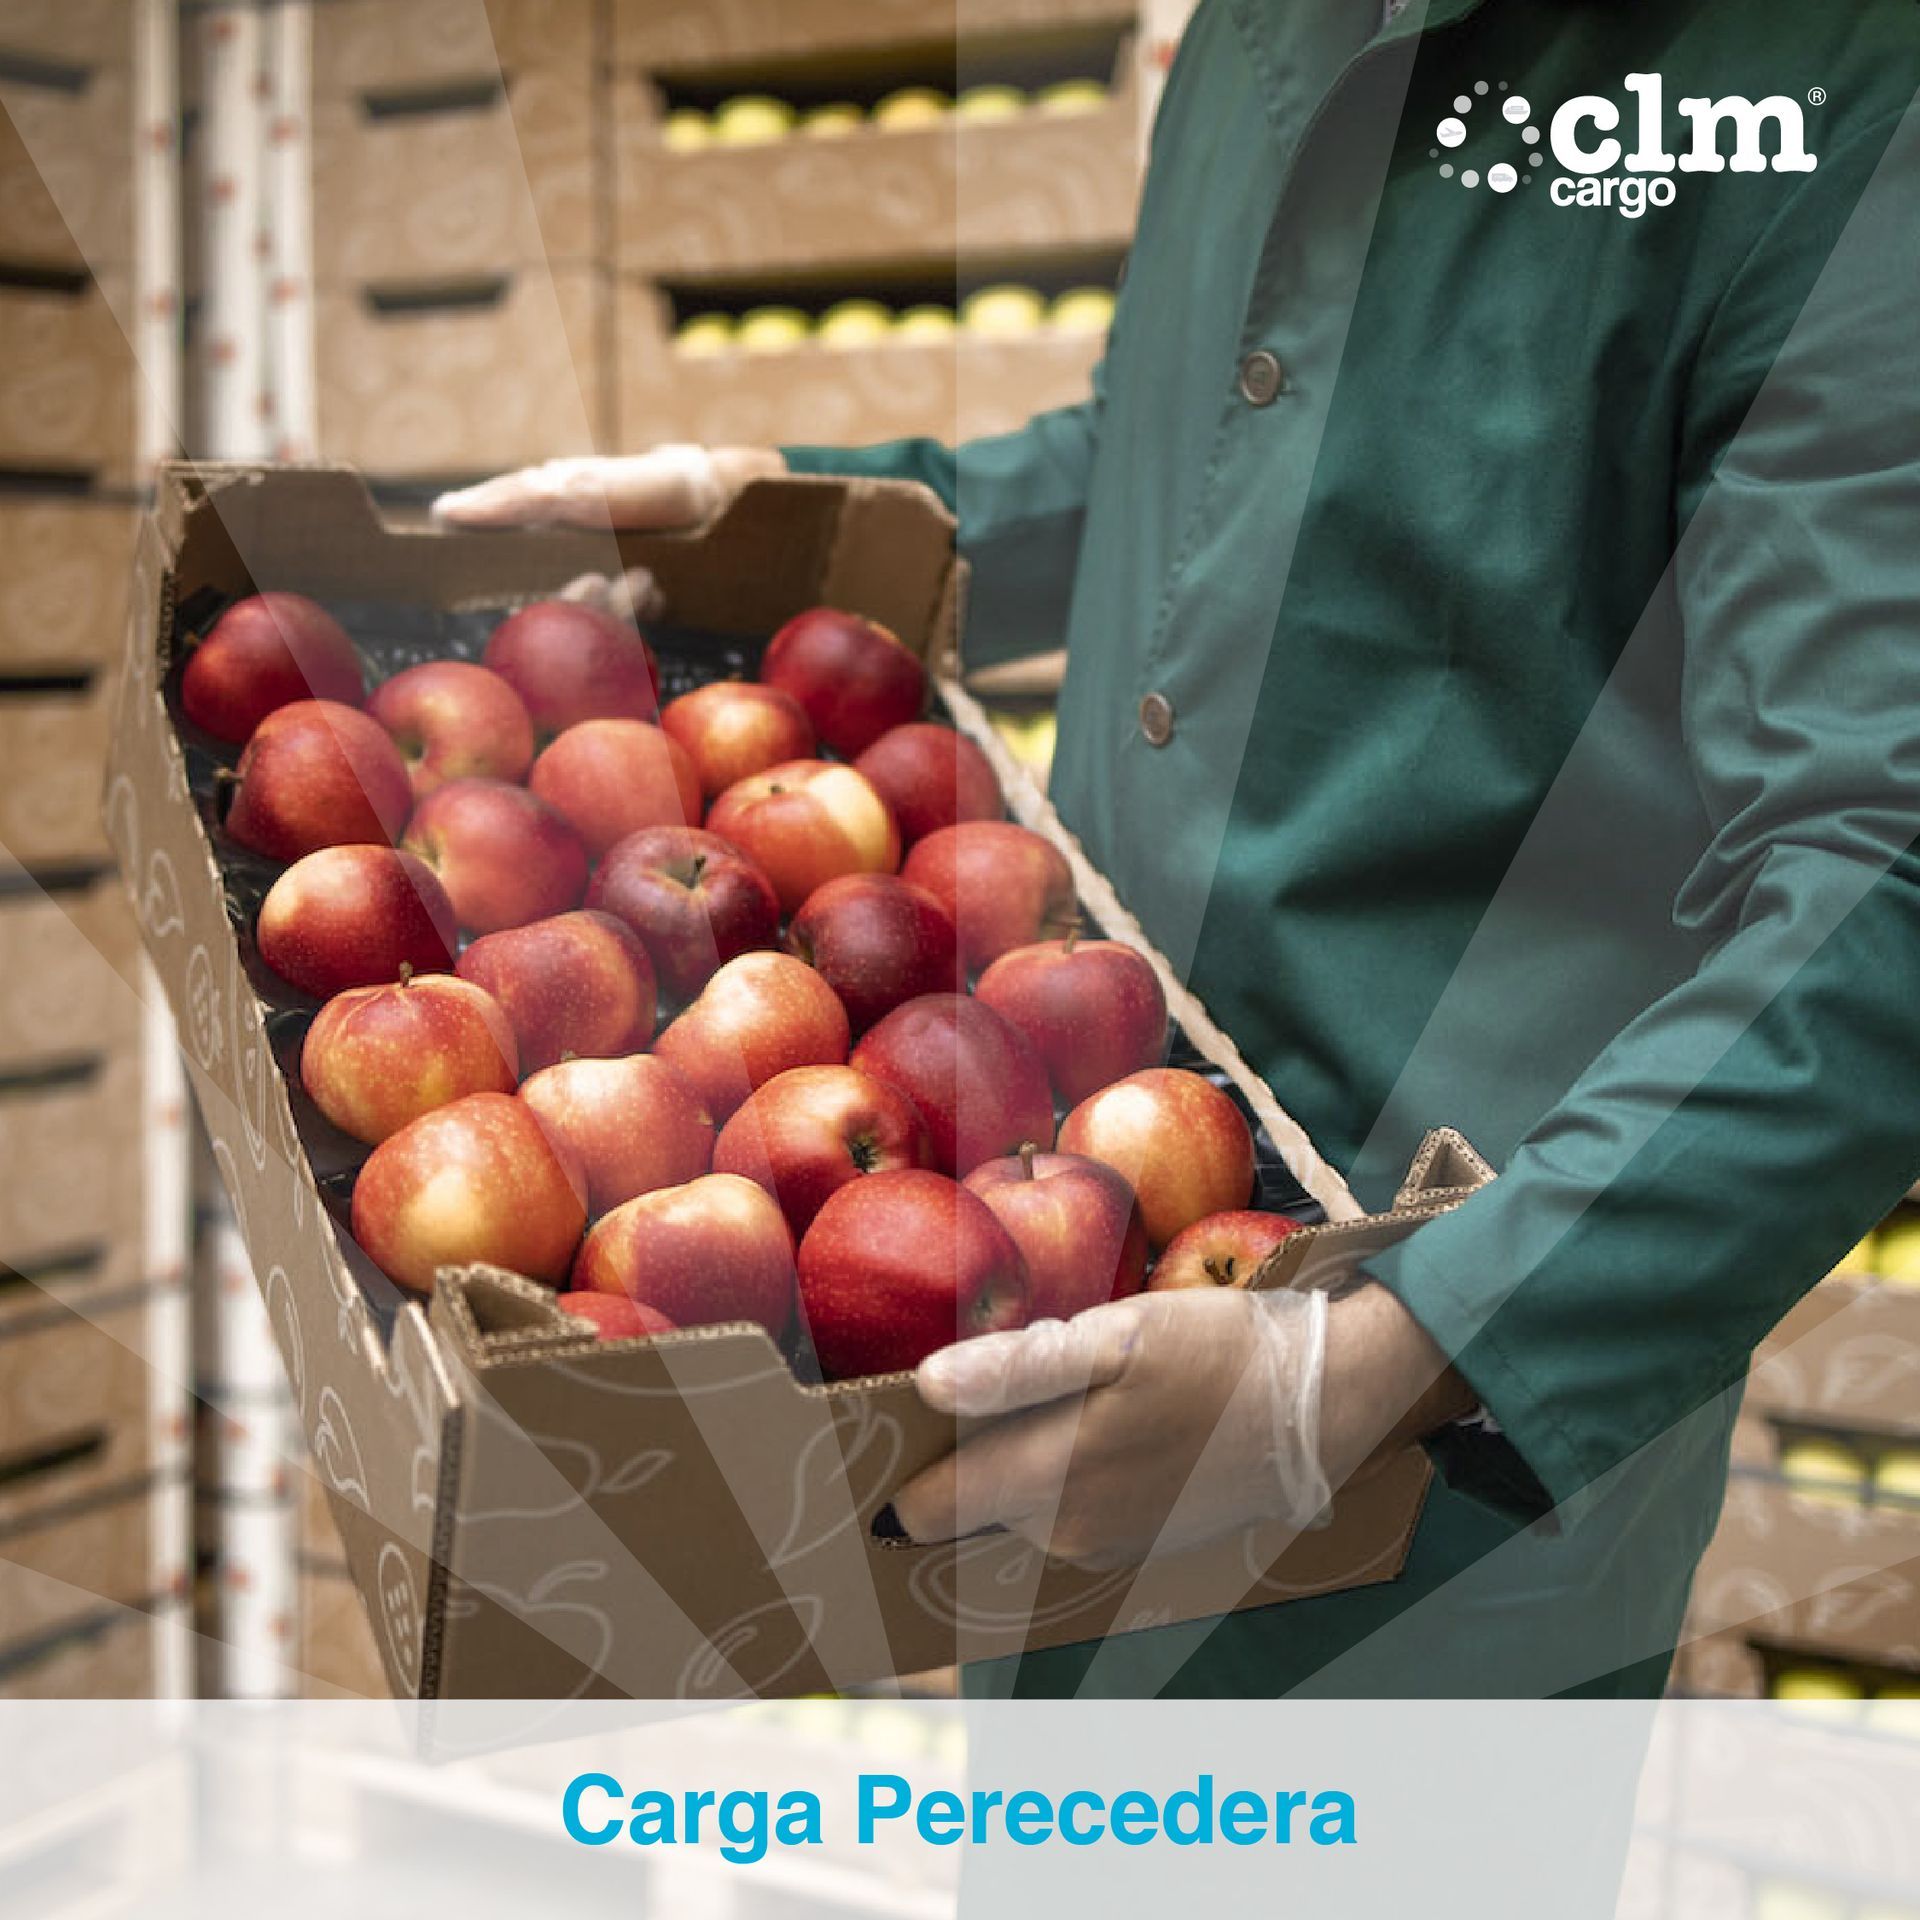 CLM Cargo Carga Perecedera
